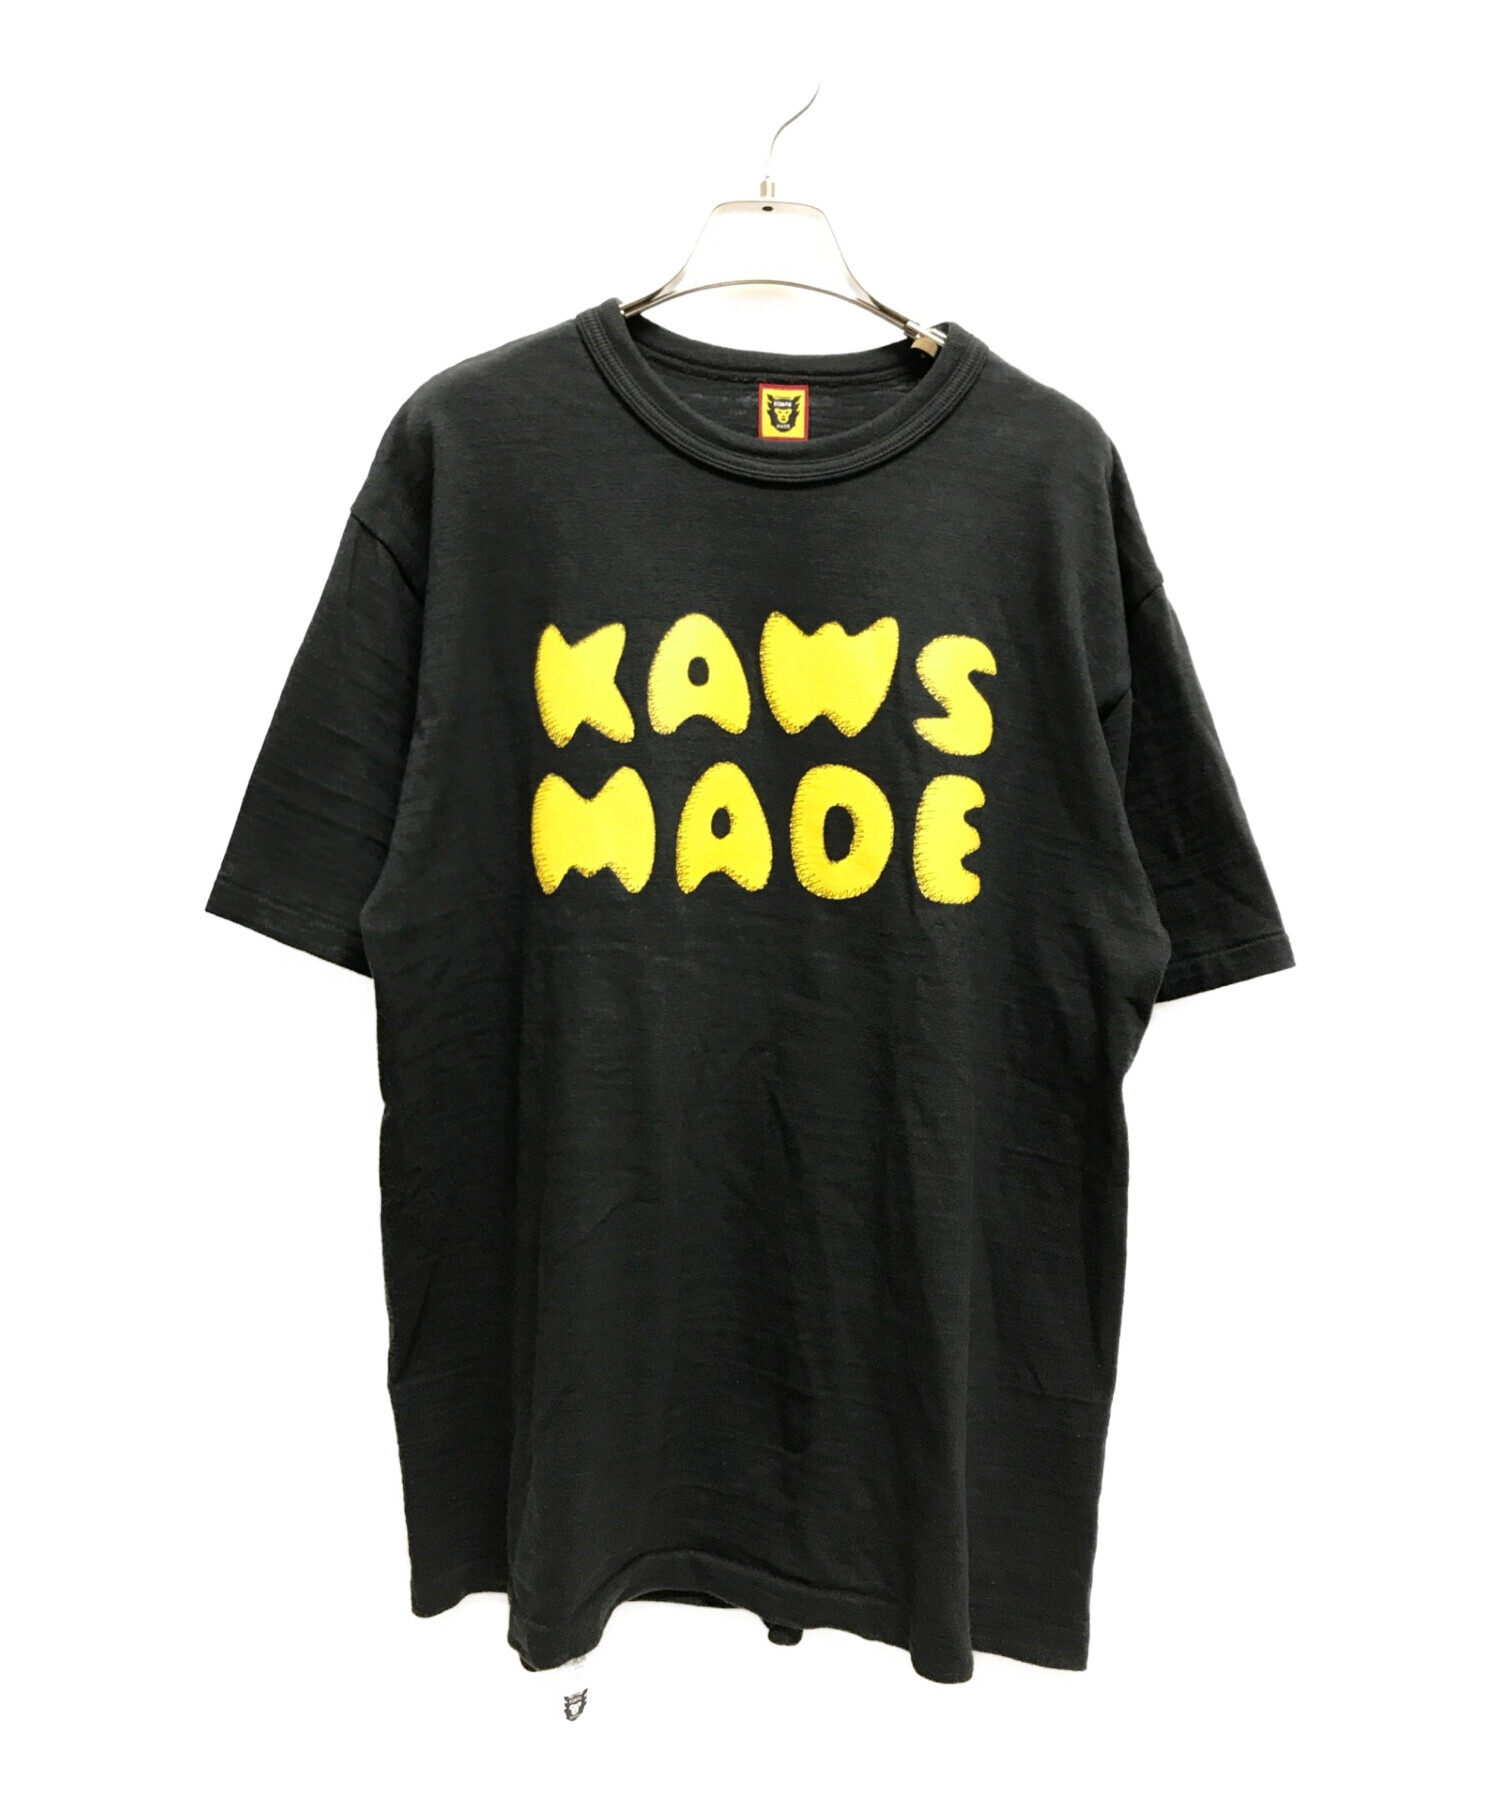 HUMAN MADE×KAWS (ヒューマンメイド×カウズ) コラボプリントTシャツ ブラック サイズ:L